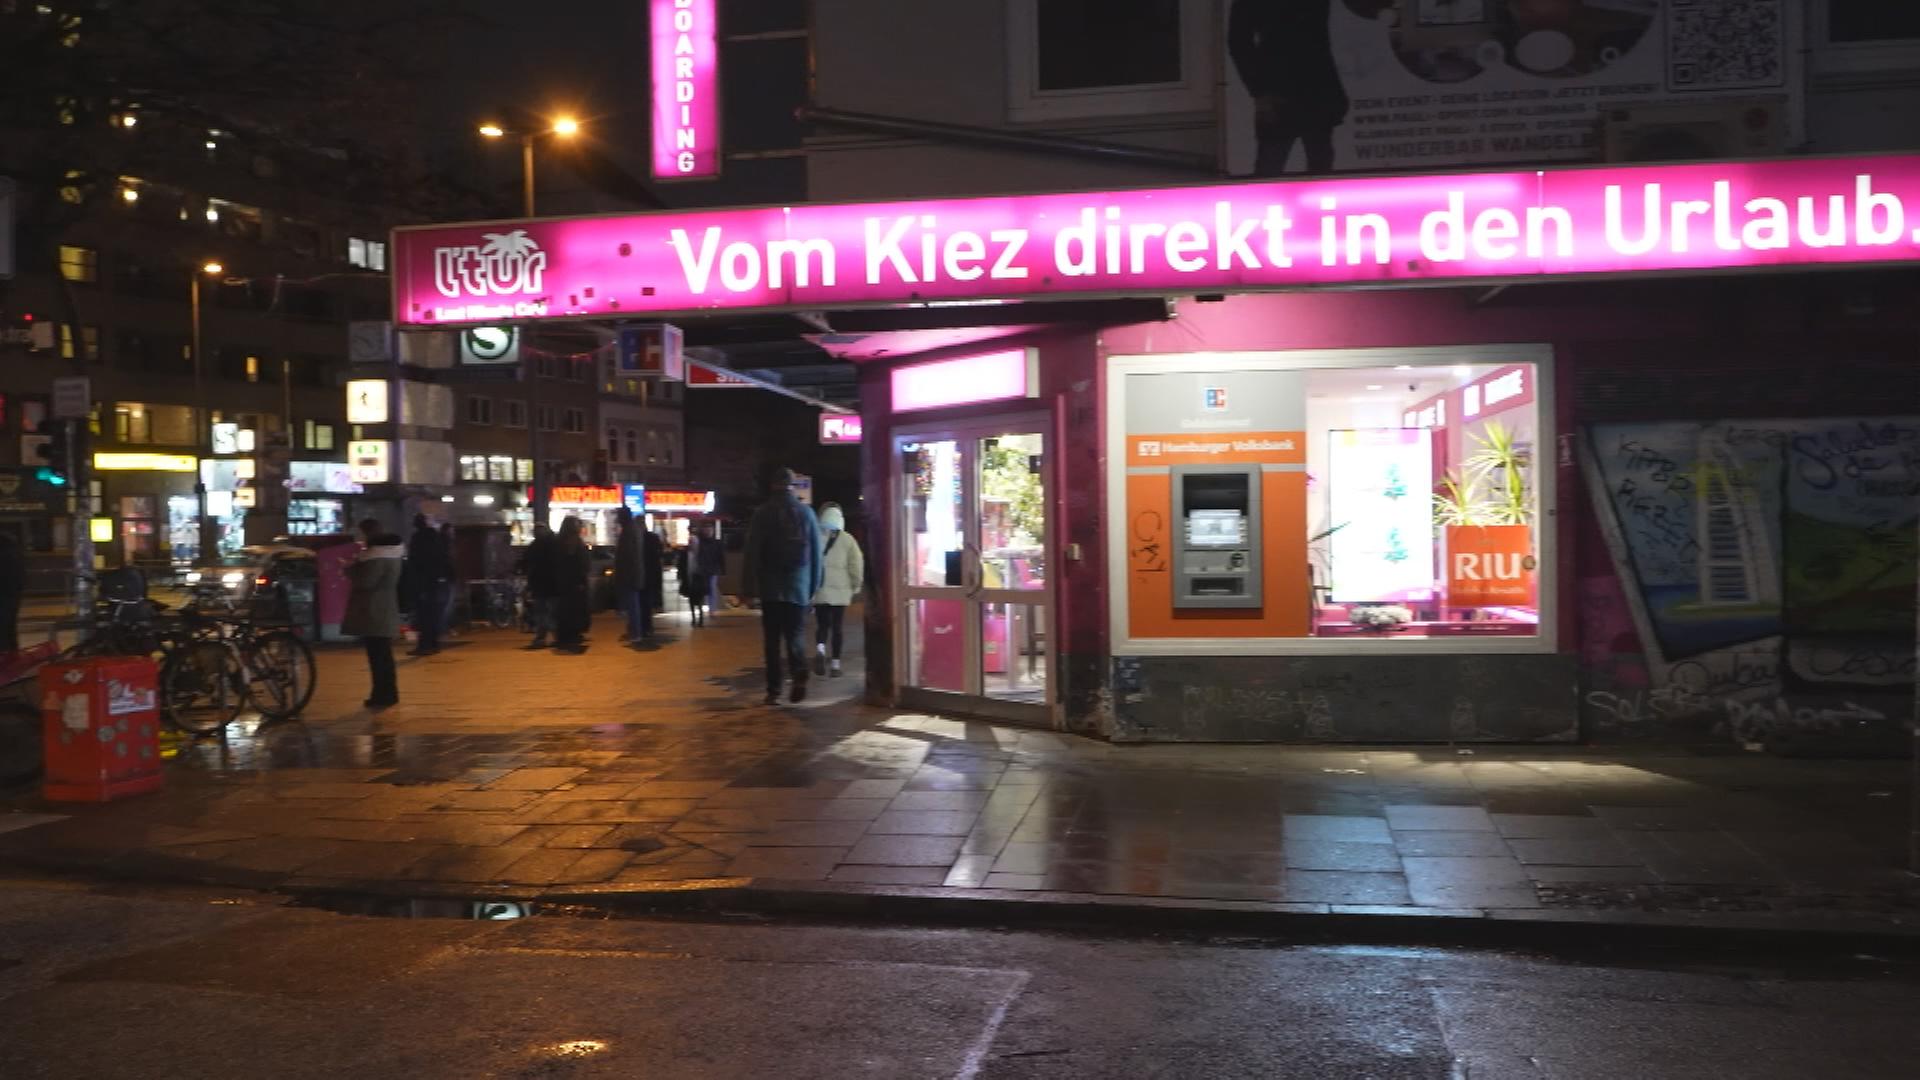 Ein Laden mit der Aufschrift "Vom Kiez direkt in den Urlaub"